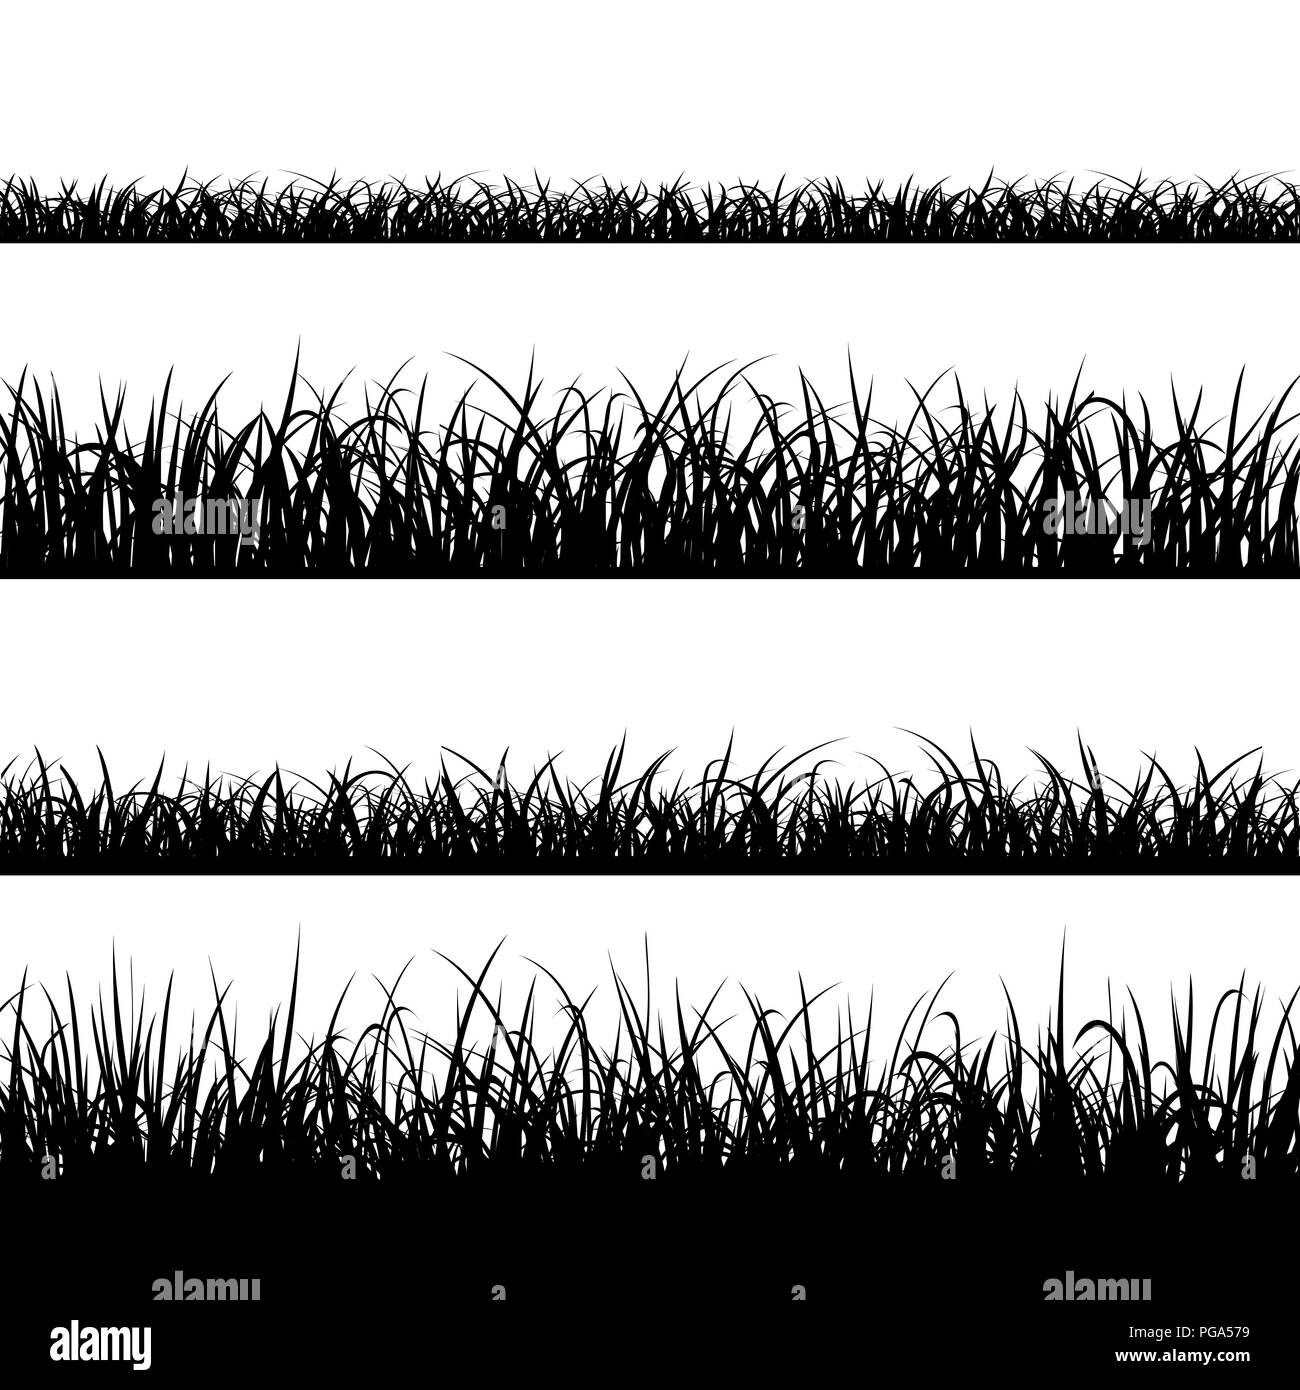 Vektor Illustration. Satz von Silhouette des Grases auf weißem Hintergrund. Vektor illustration Stock Vektor